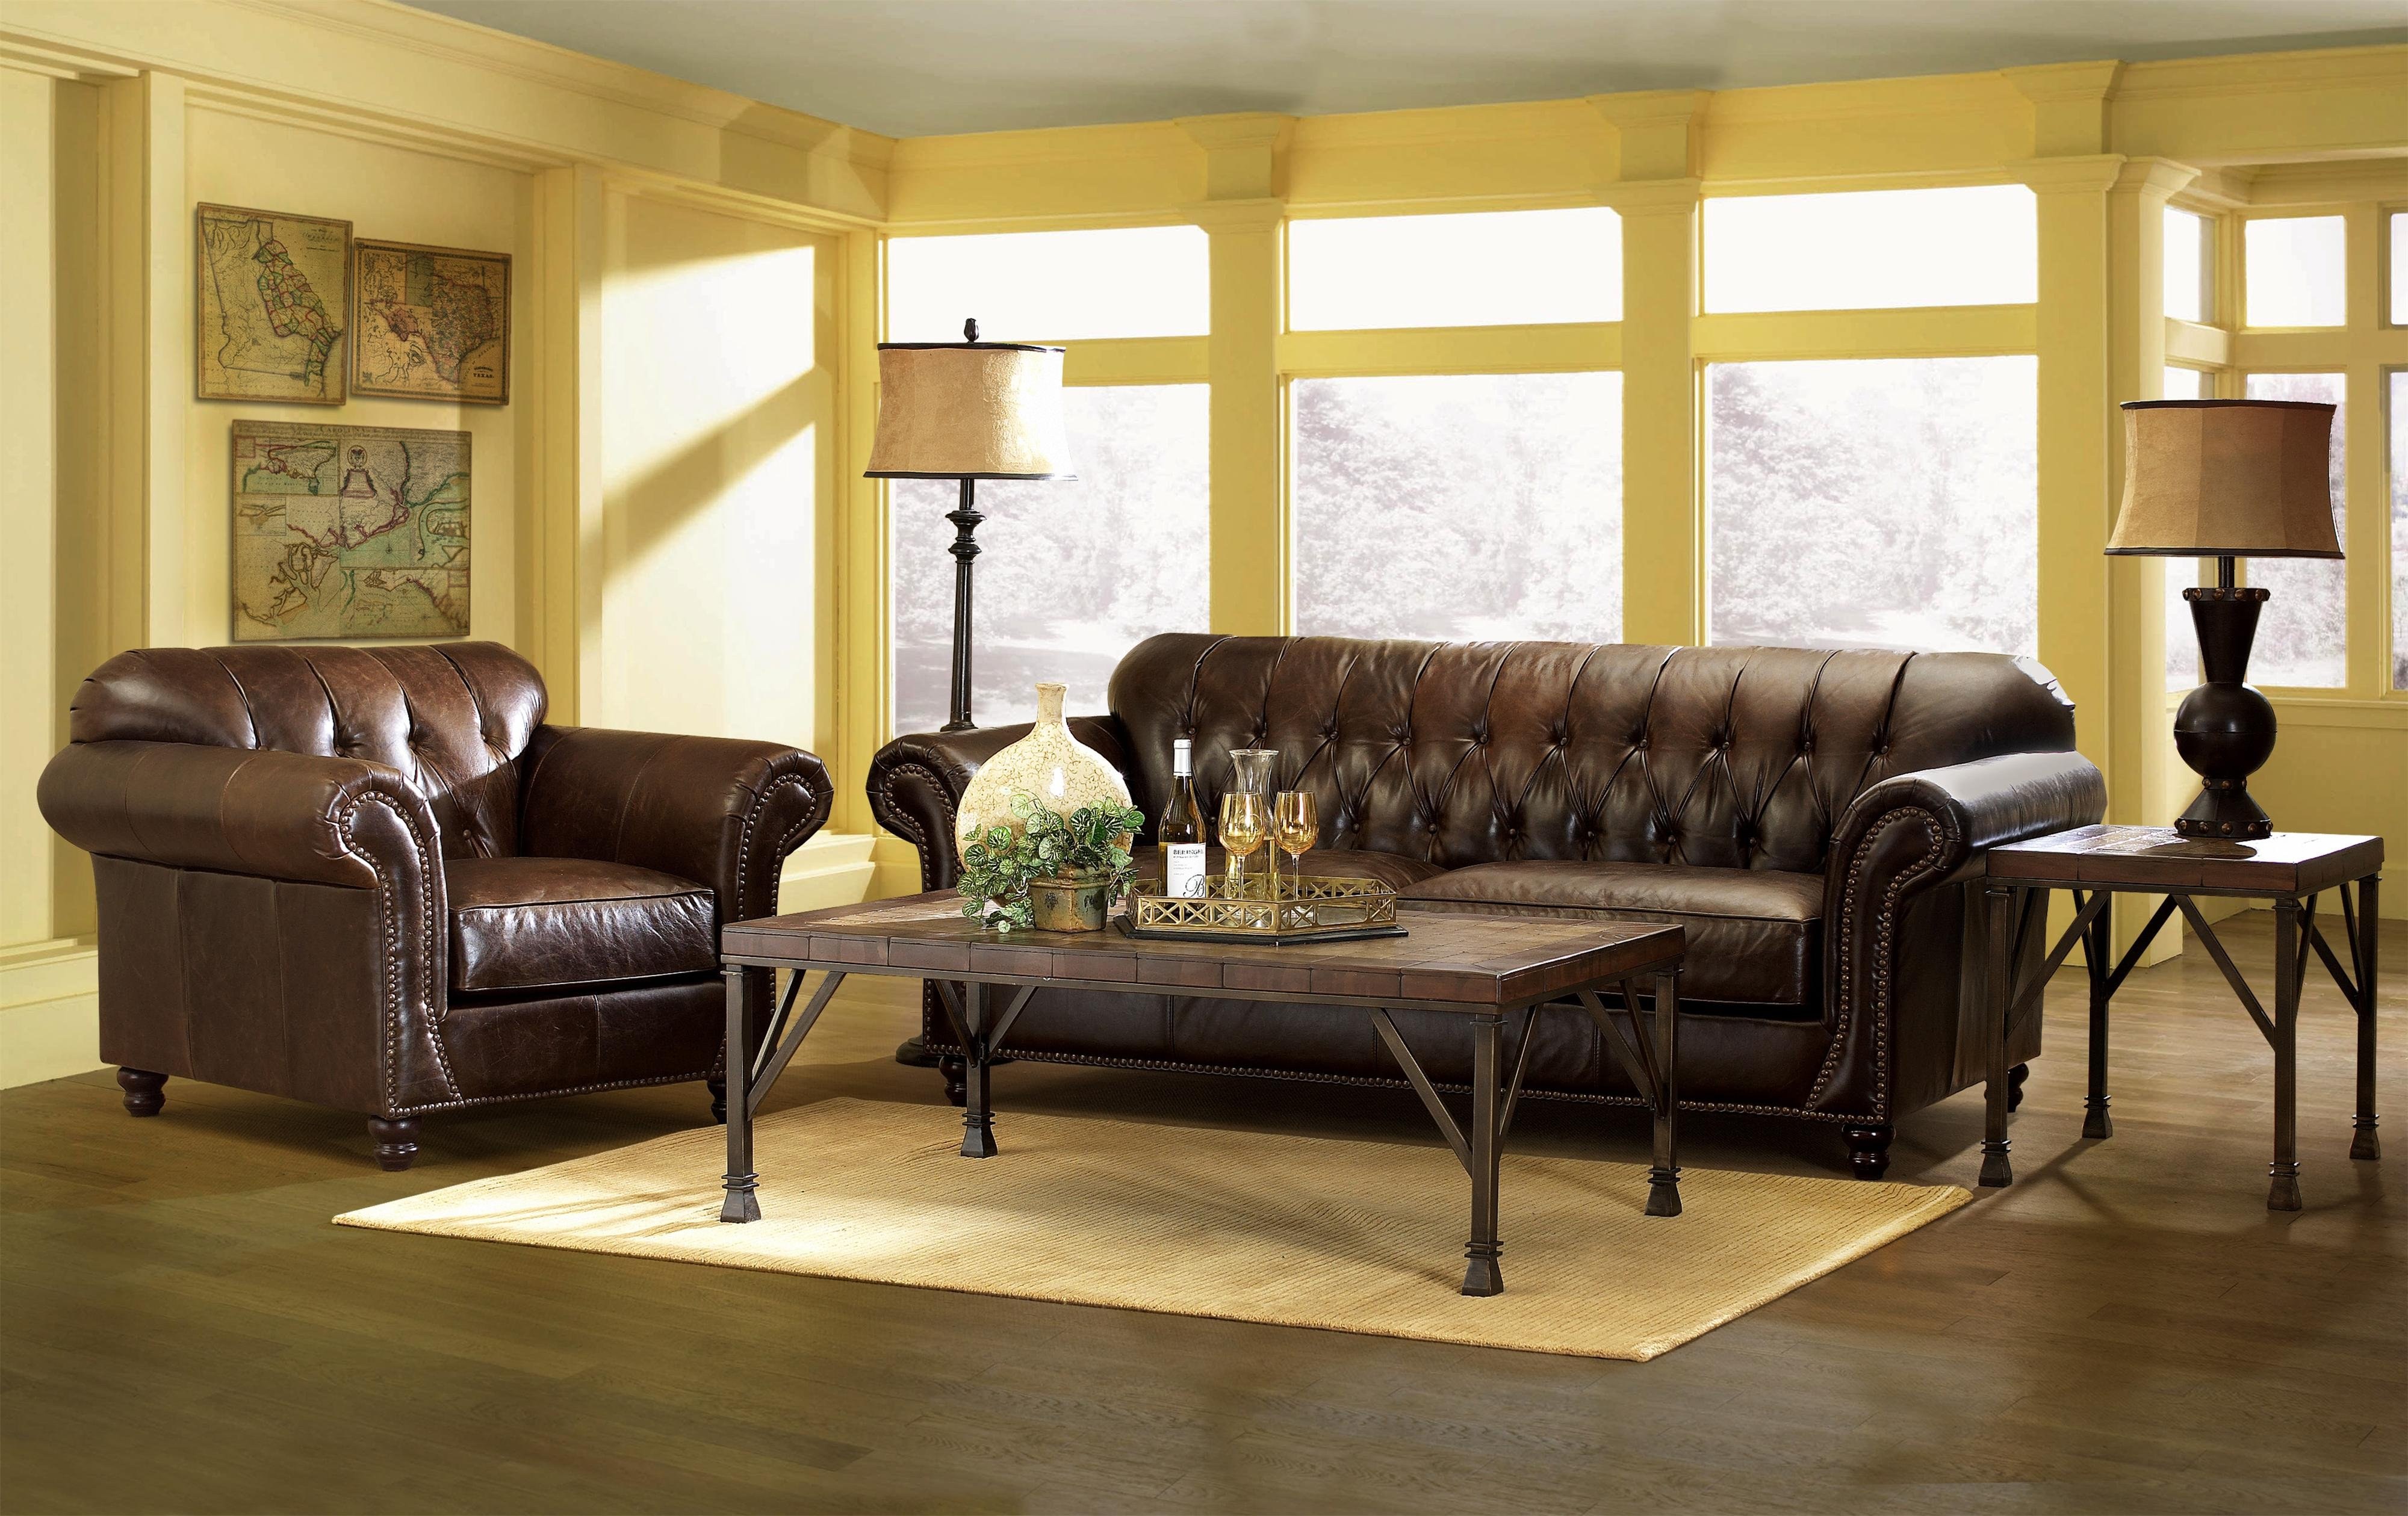 Диван шоколад. Диван в колониальном стиле. Кожаный диван в интерьере. Коричневый диван. Коричневый диван в интерьере.